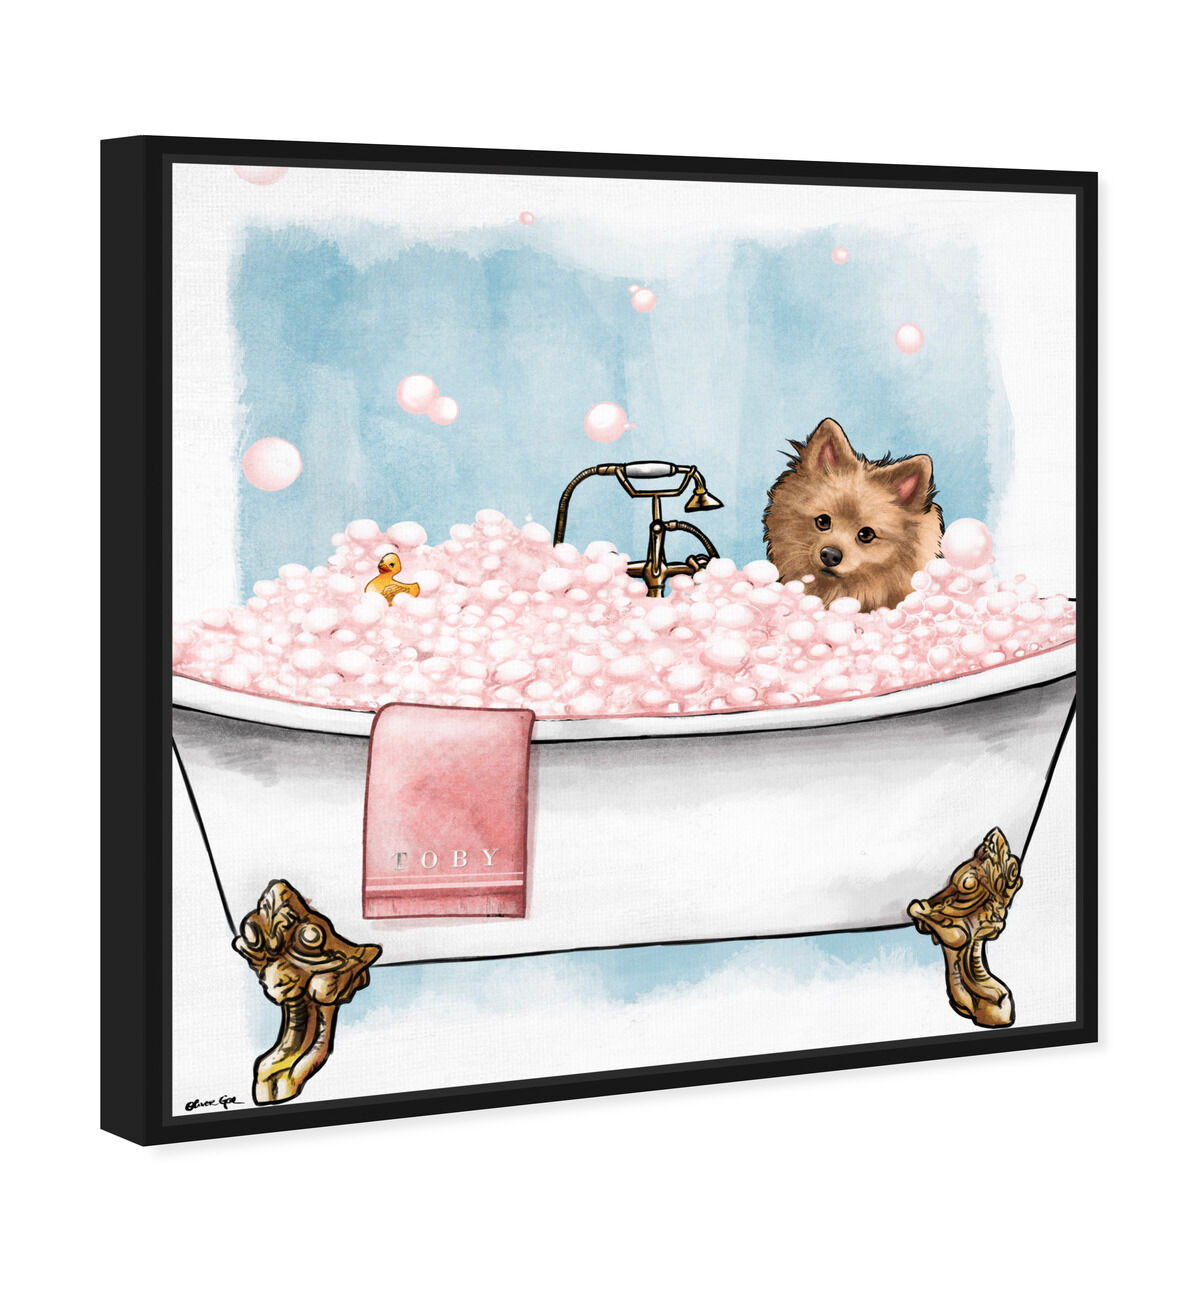 Pet in the tub - Custom Pet Portrait